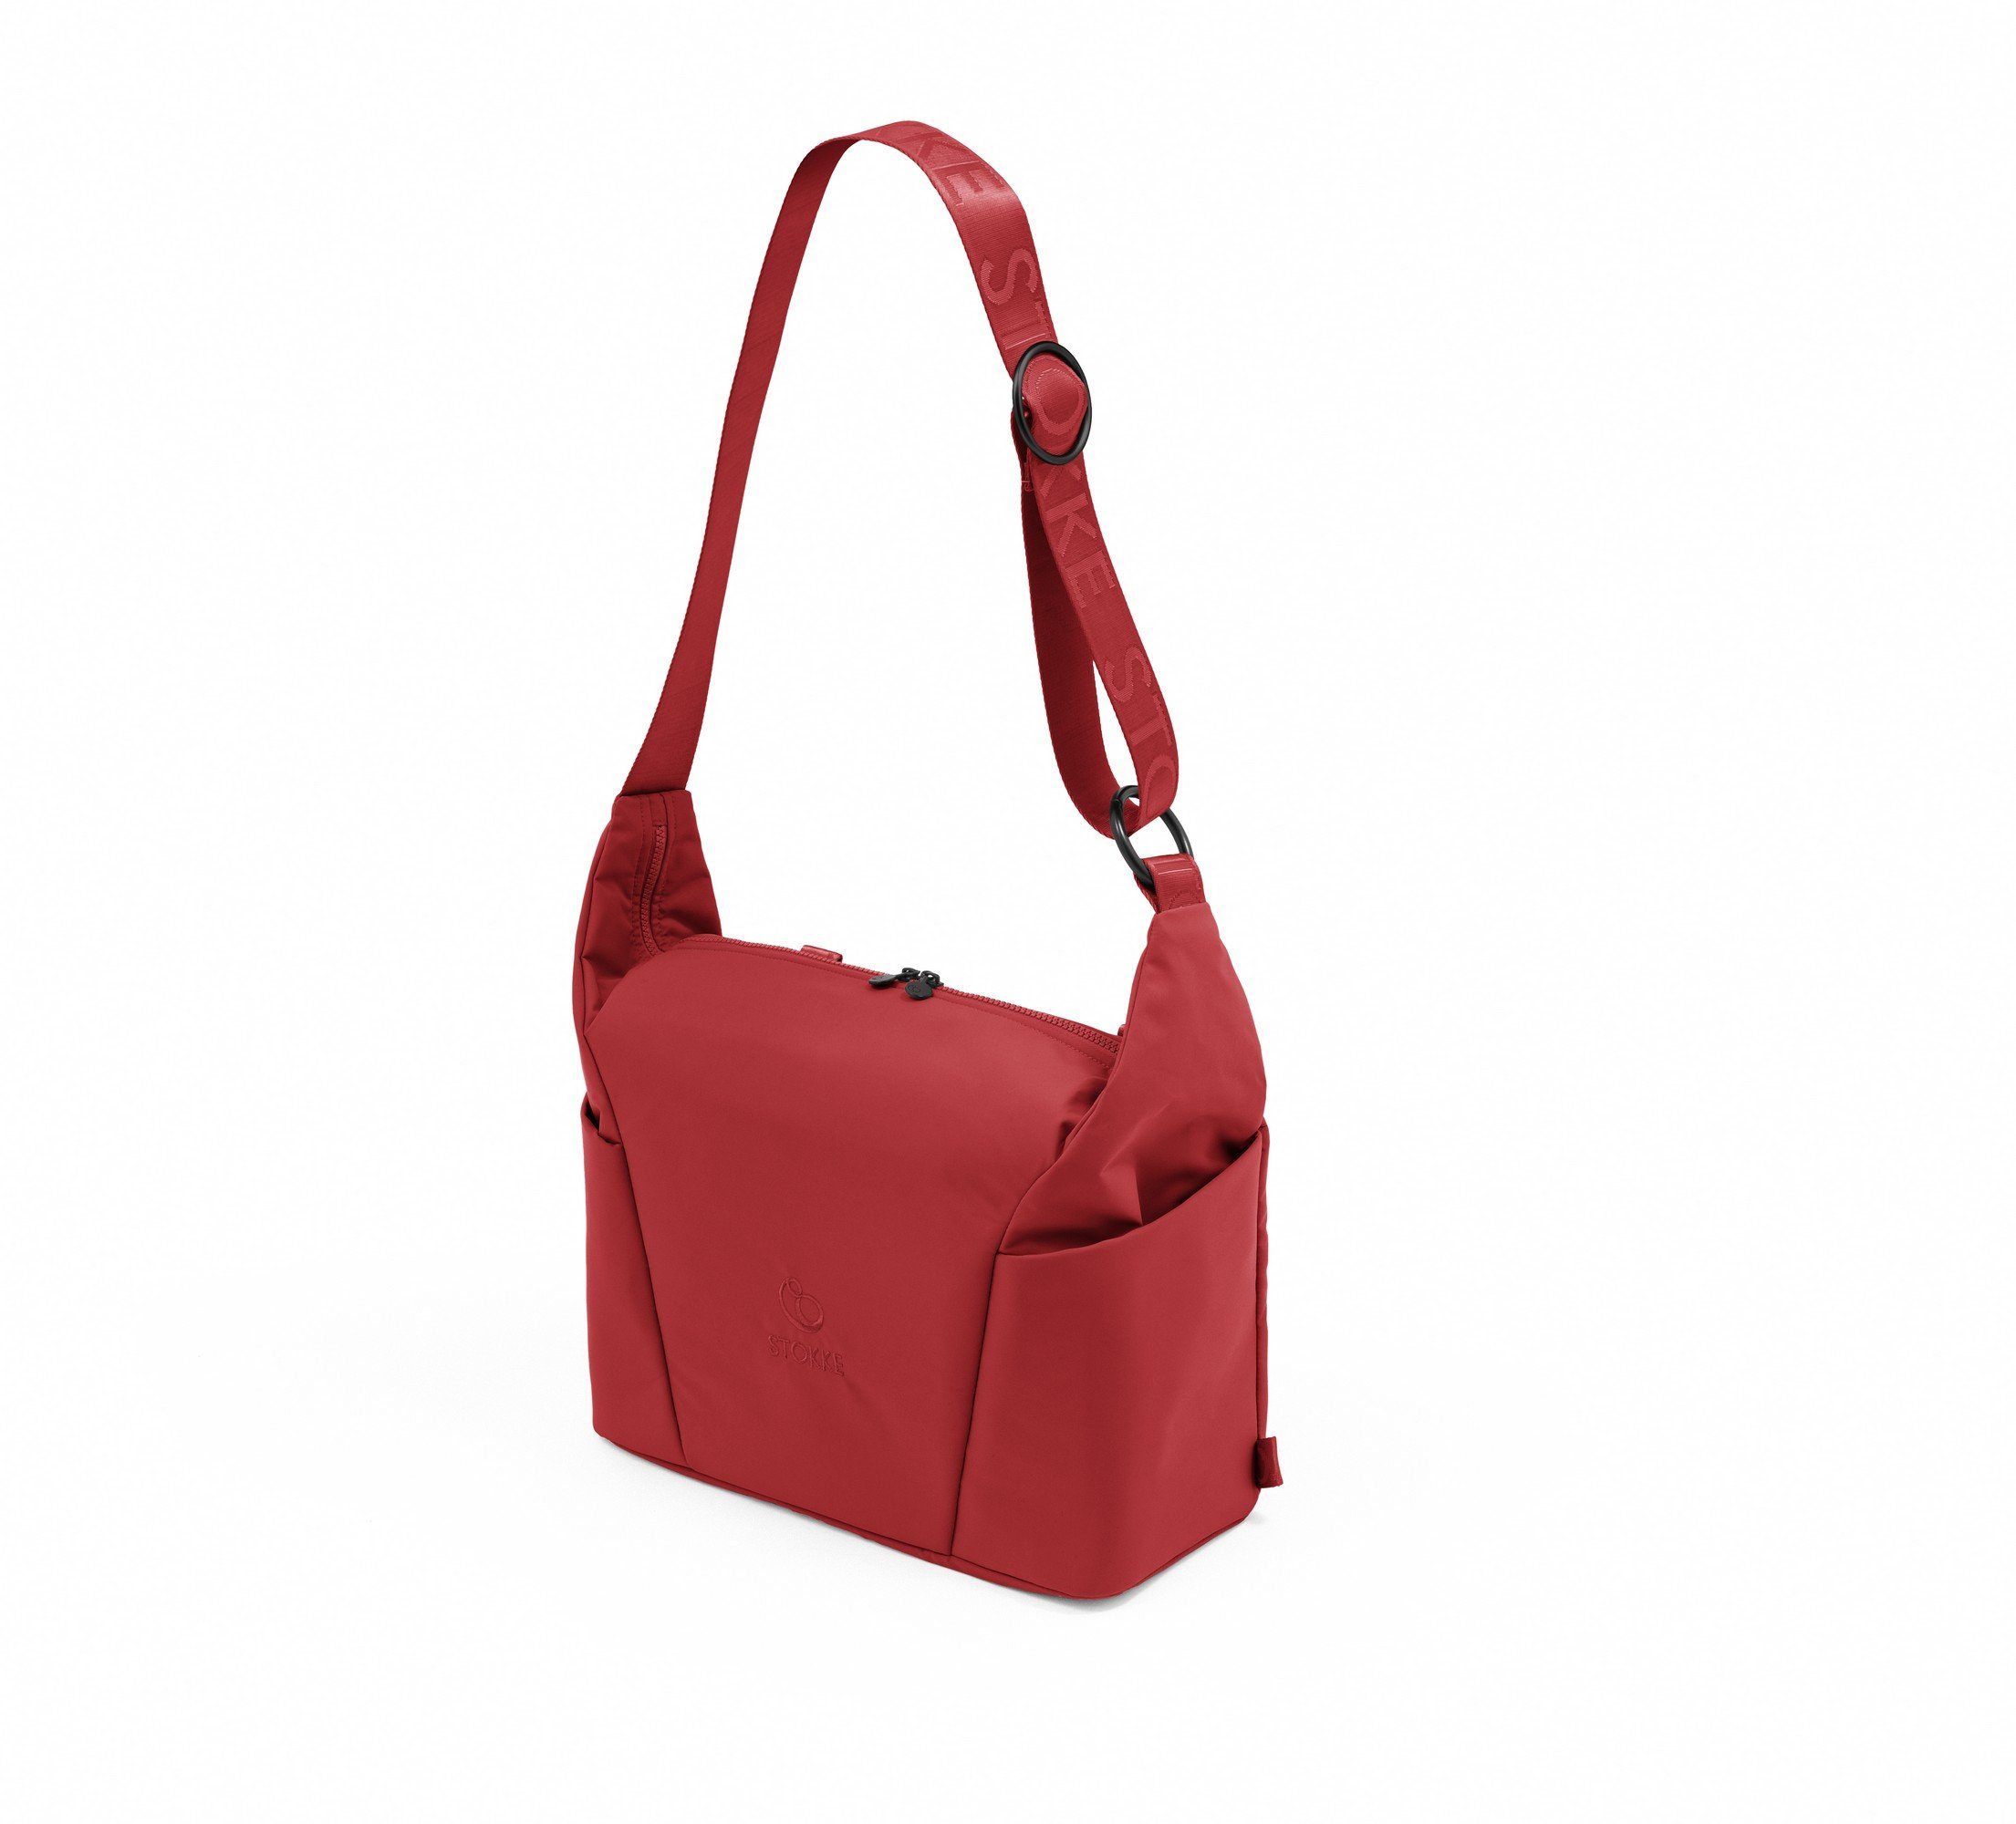 Xplory Trageoptionen Wickeltasche auch passend für - den Stokke X zwei Red Tasche mit Ruby